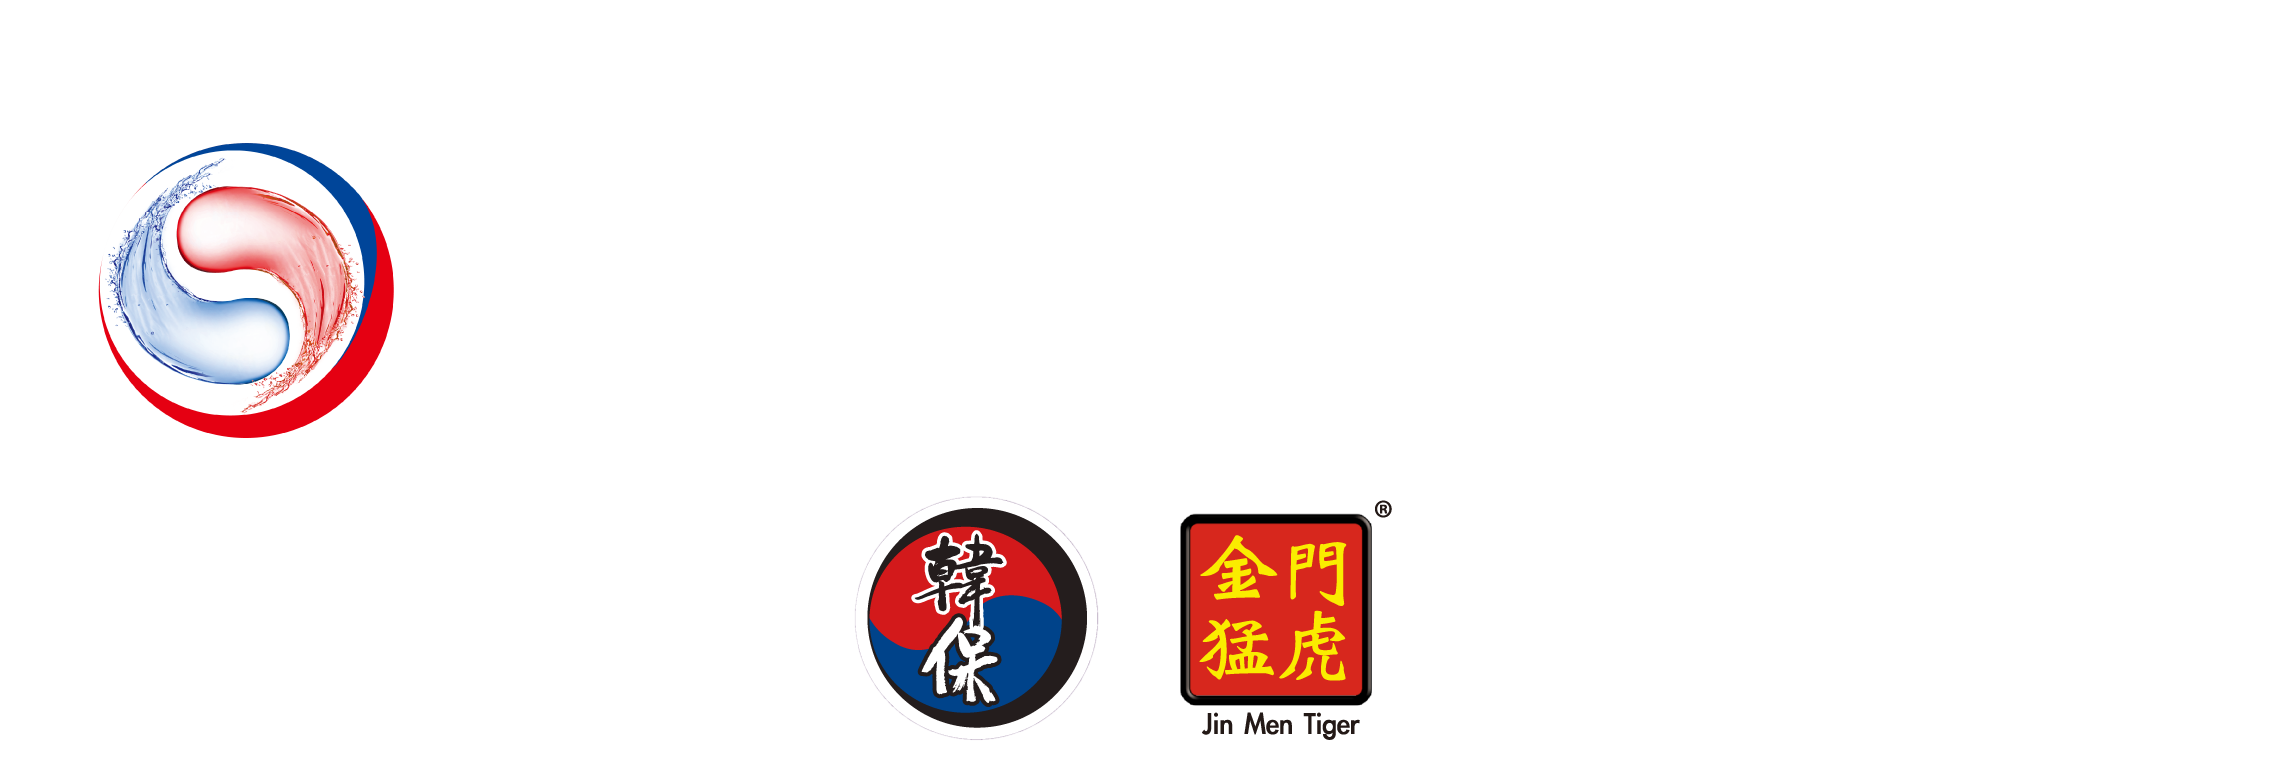 雅悅實業有限公司 Asia Health Products Limited